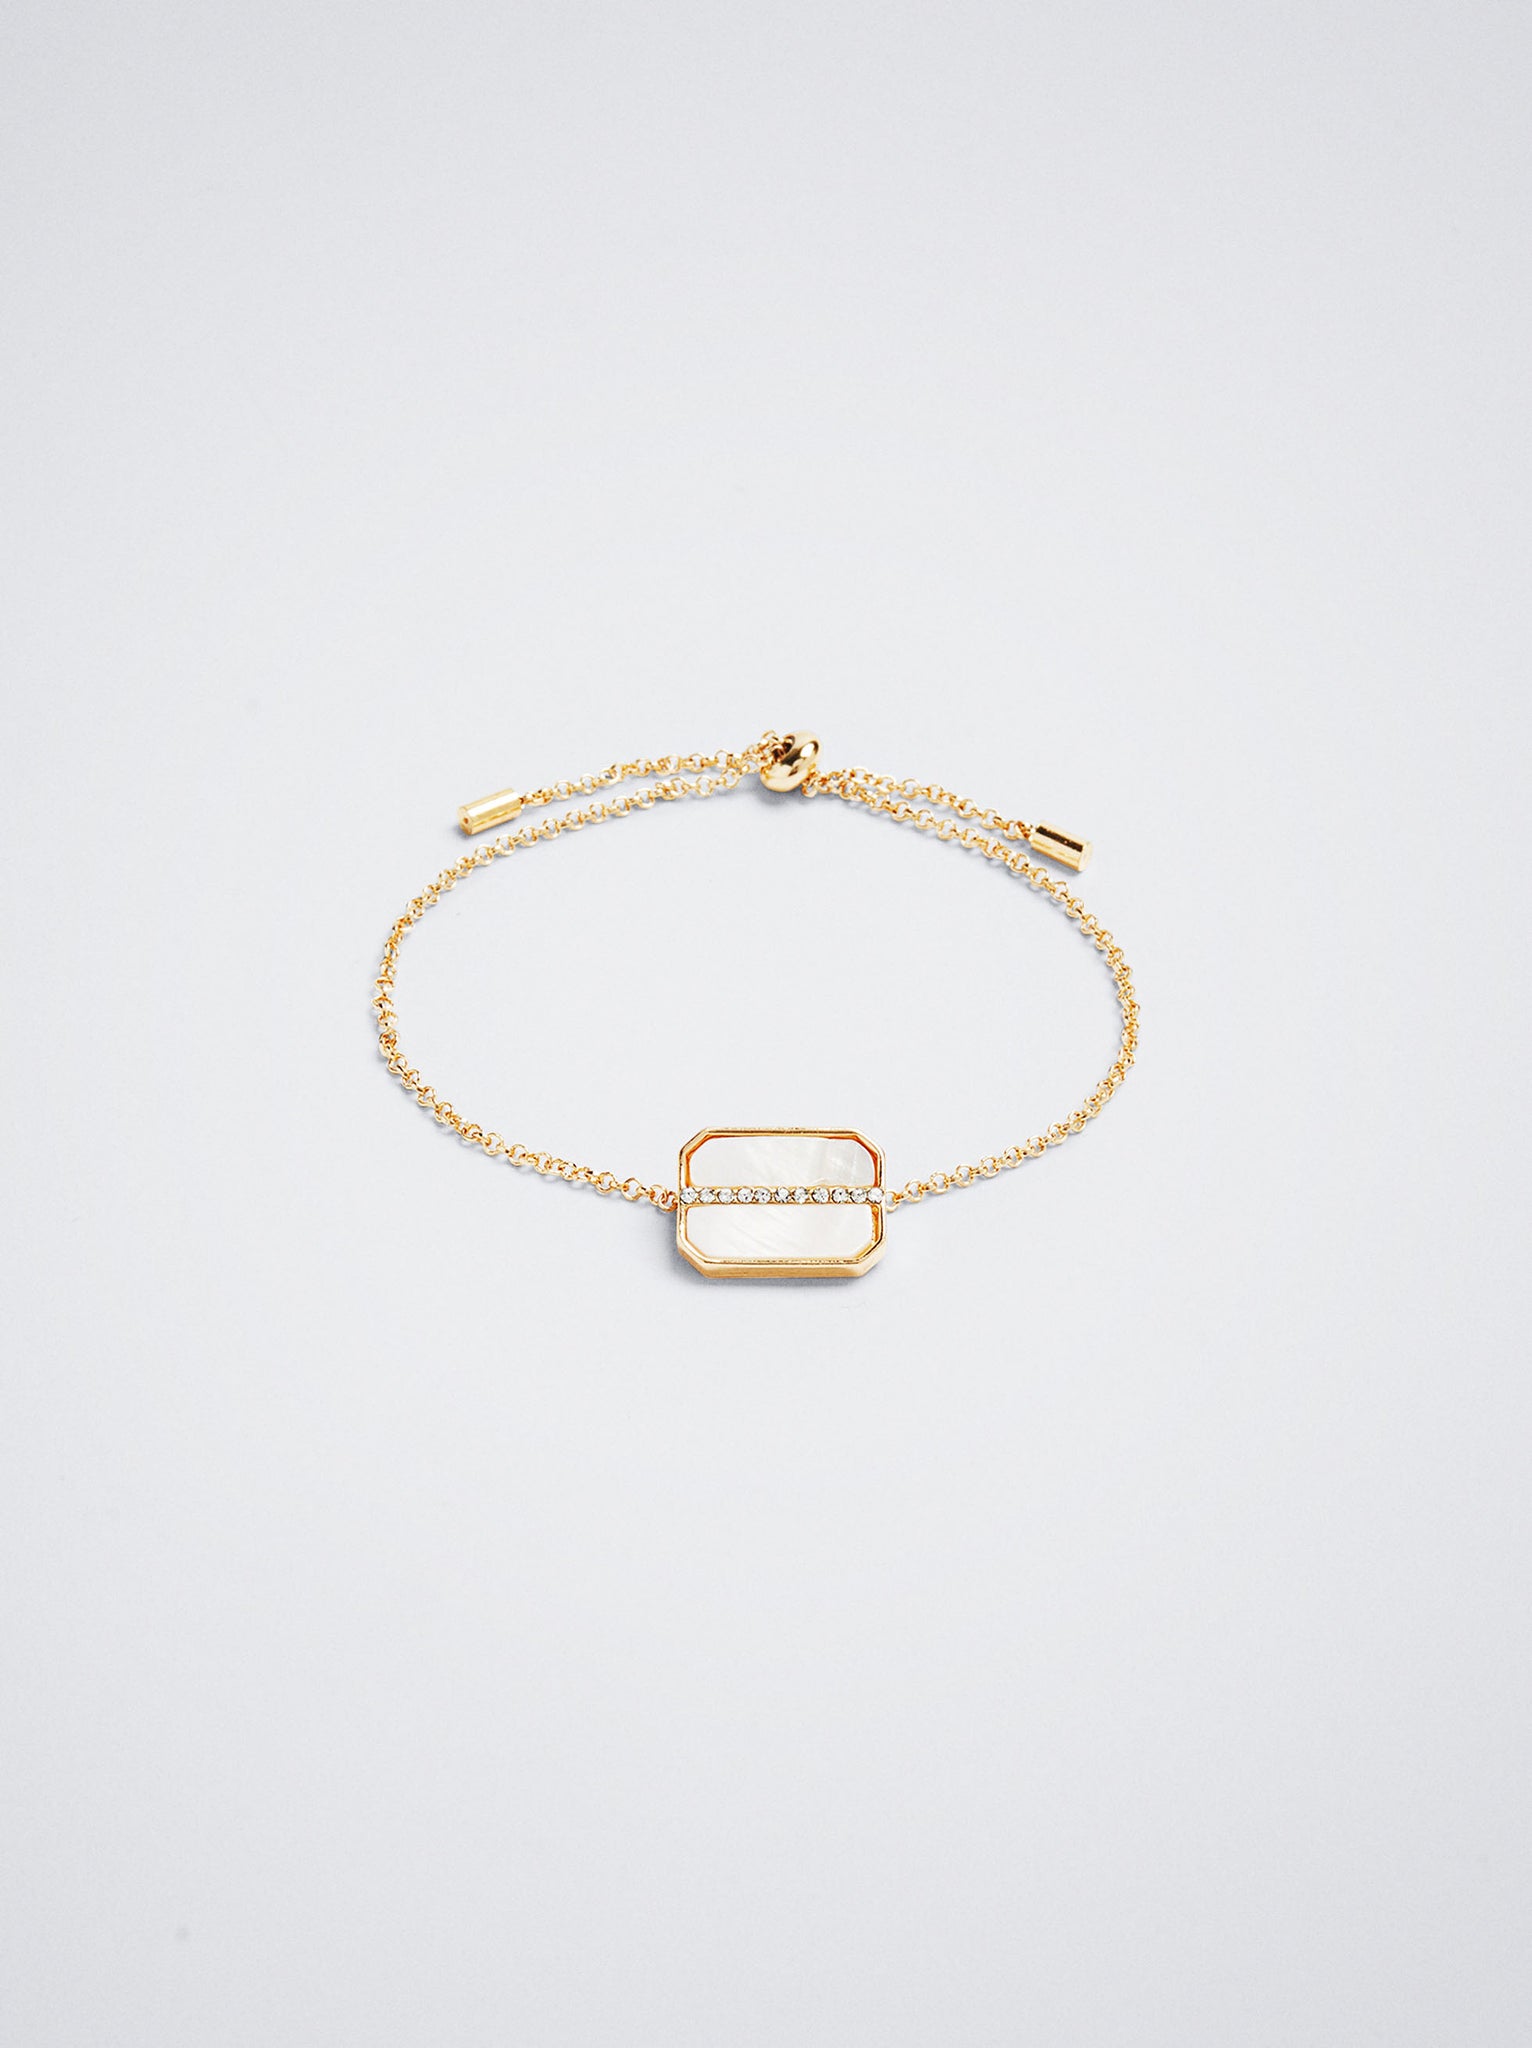 Adjustable Golden Bracelet With Shell